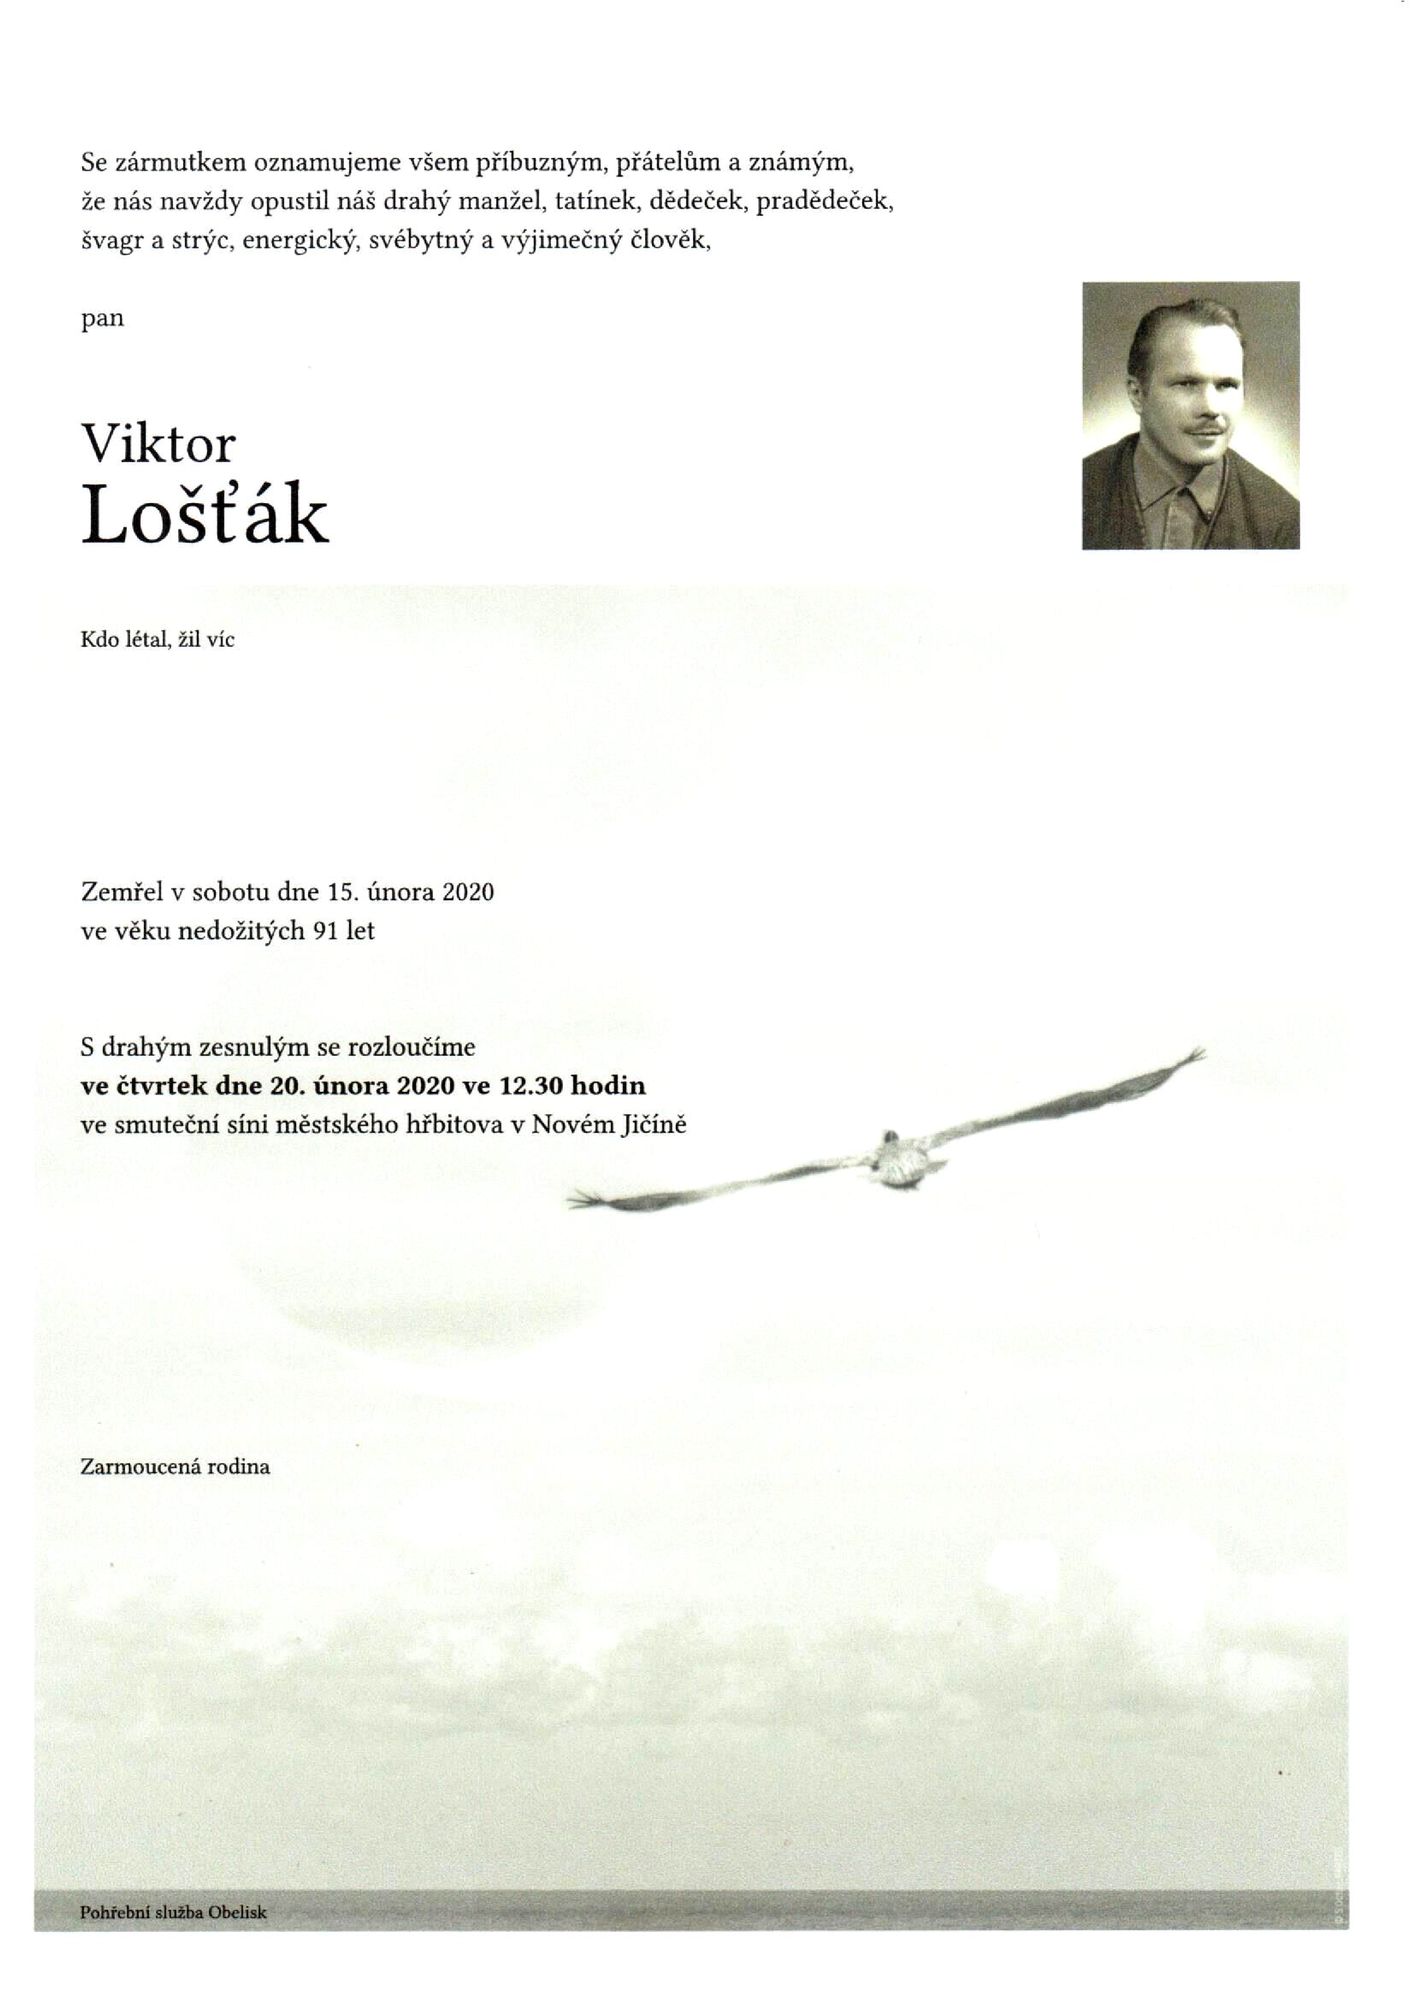 Viktor Lošťák